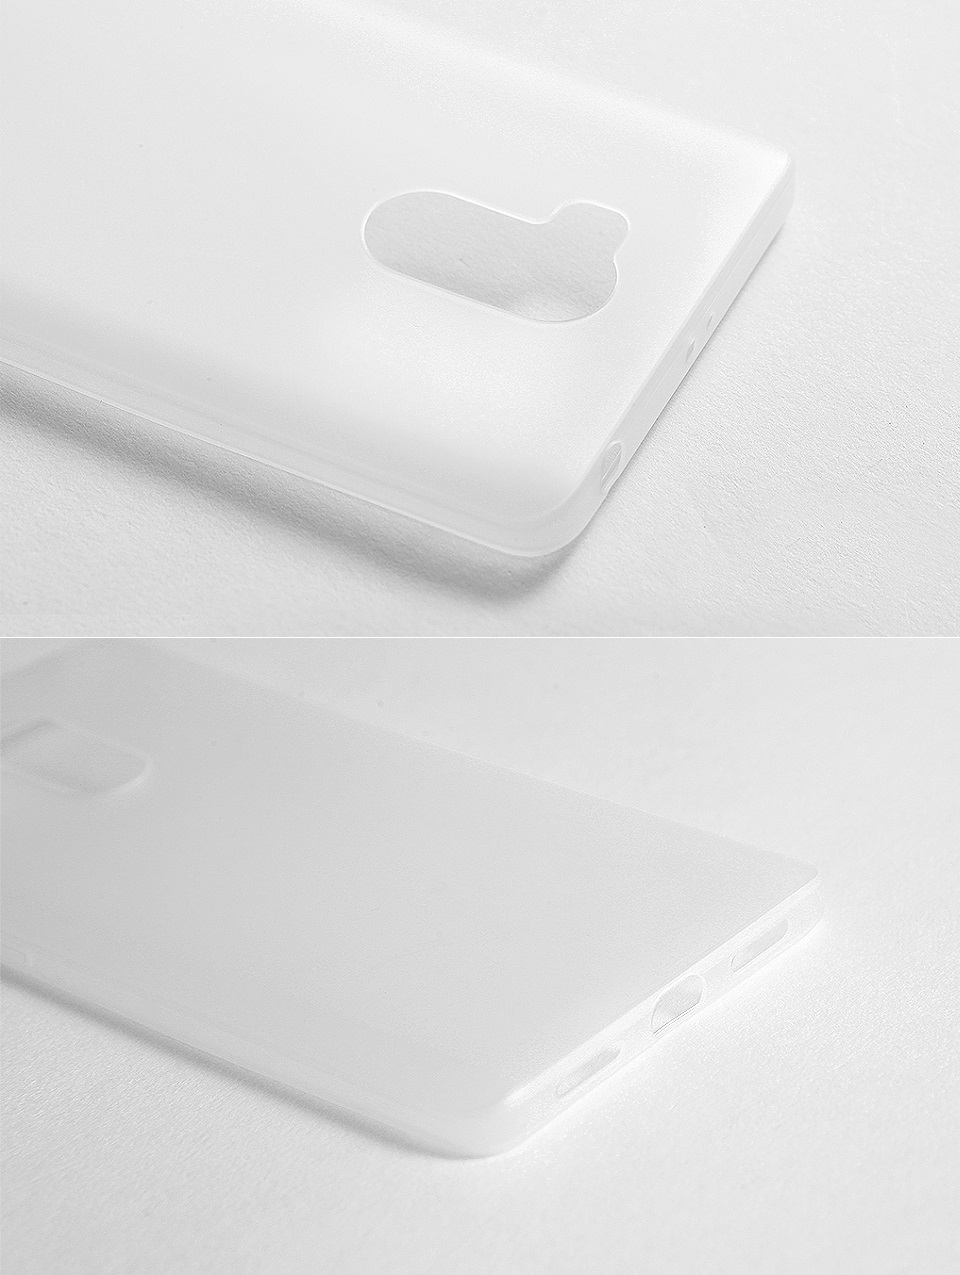 Чехол бампер силиконовый для смартфонов Xiaomi Redmi 4 Pro White разные ракурсы